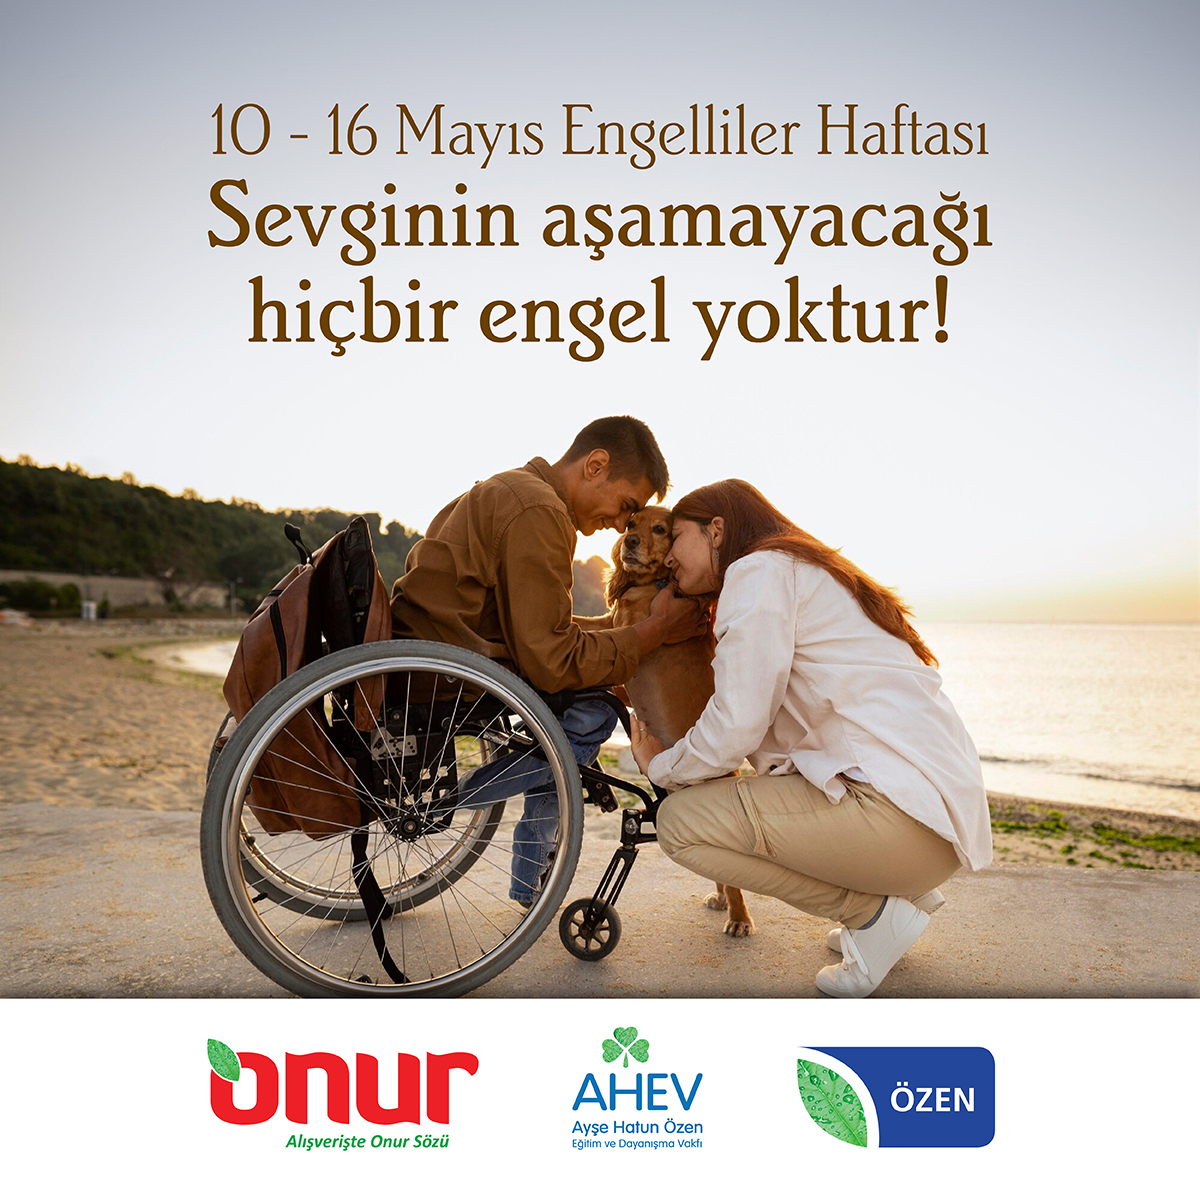 10 - 16 Mayıs Engelliler Haftası Sevginin aşamayacağı hiçbir engel yoktur! #OnurMarket #Sevgi #Empati #Dayanışma #EngelOlma #DestekOl #EngellilerHaftası